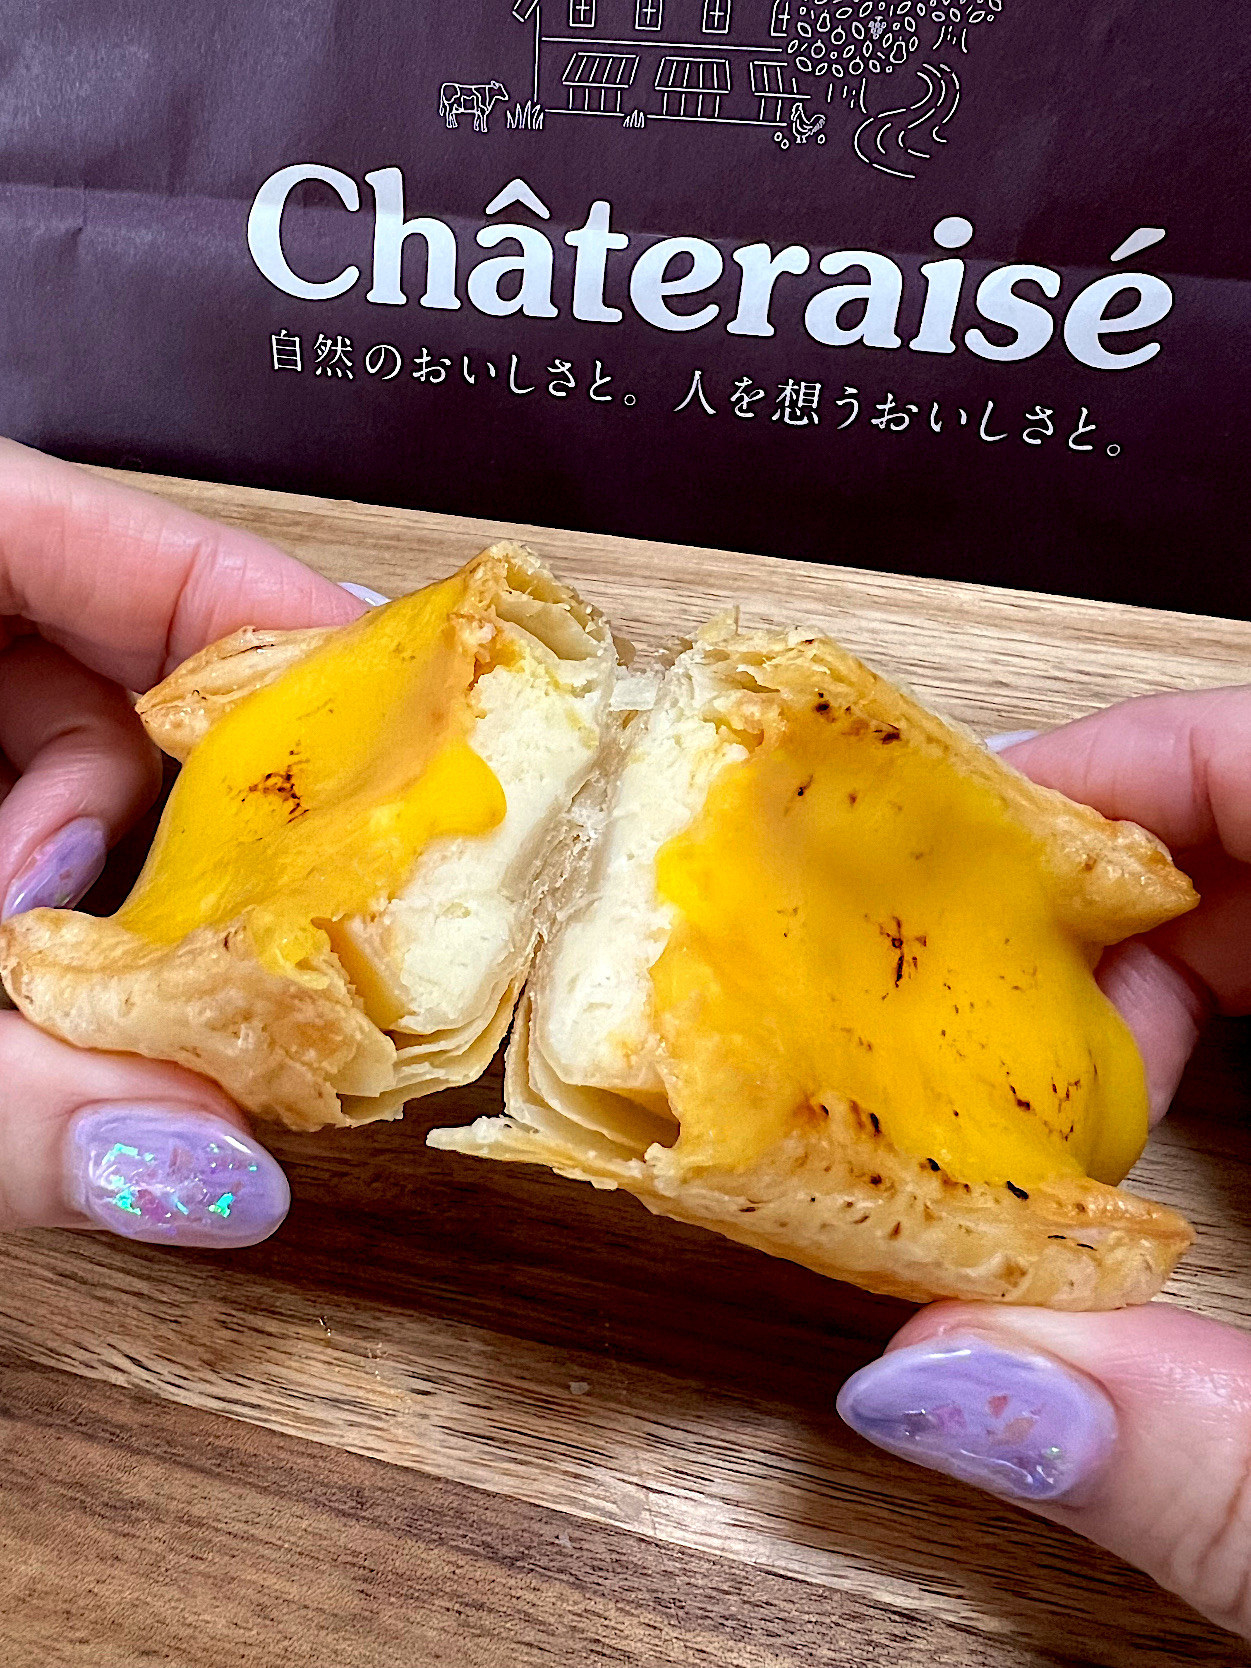 Chateraise（シャトレーゼ）のオススメのスイーツ「レモンチーズパイ」